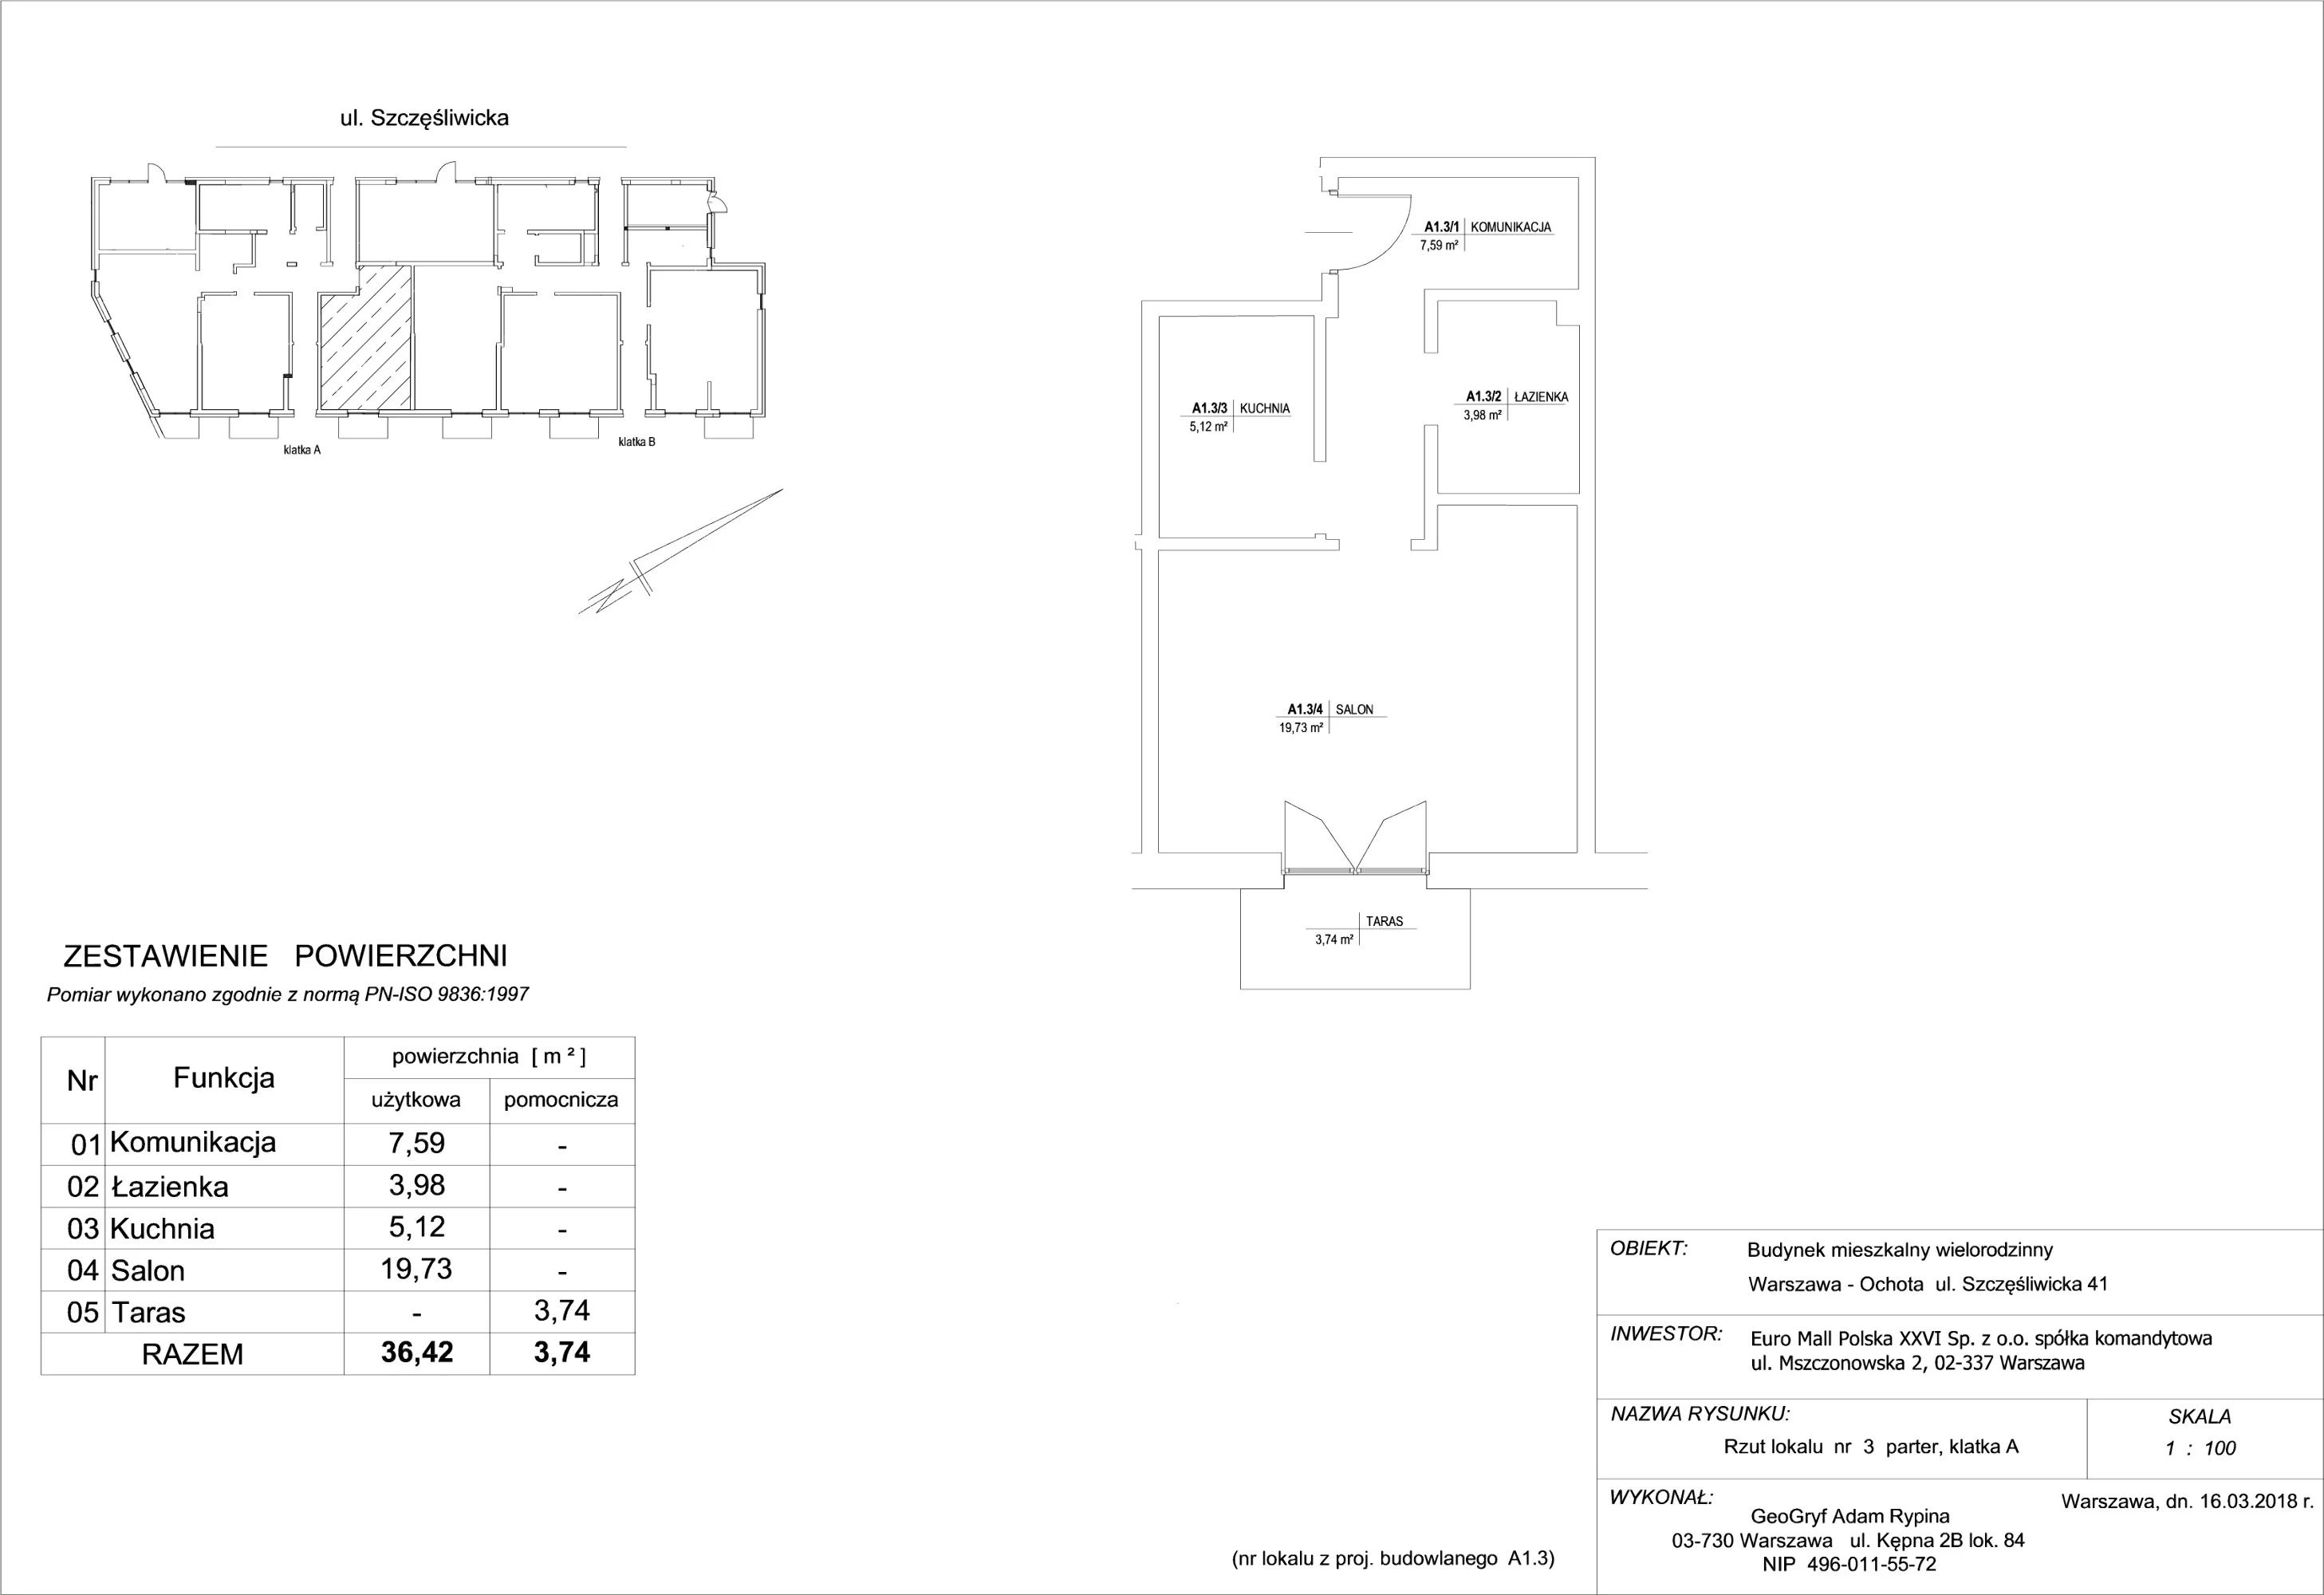 Mieszkanie 36,42 m², parter, oferta nr 3, Szczęśliwicka 41, Warszawa, Ochota, Szczęśliwice, ul. Szczęśliwicka 41